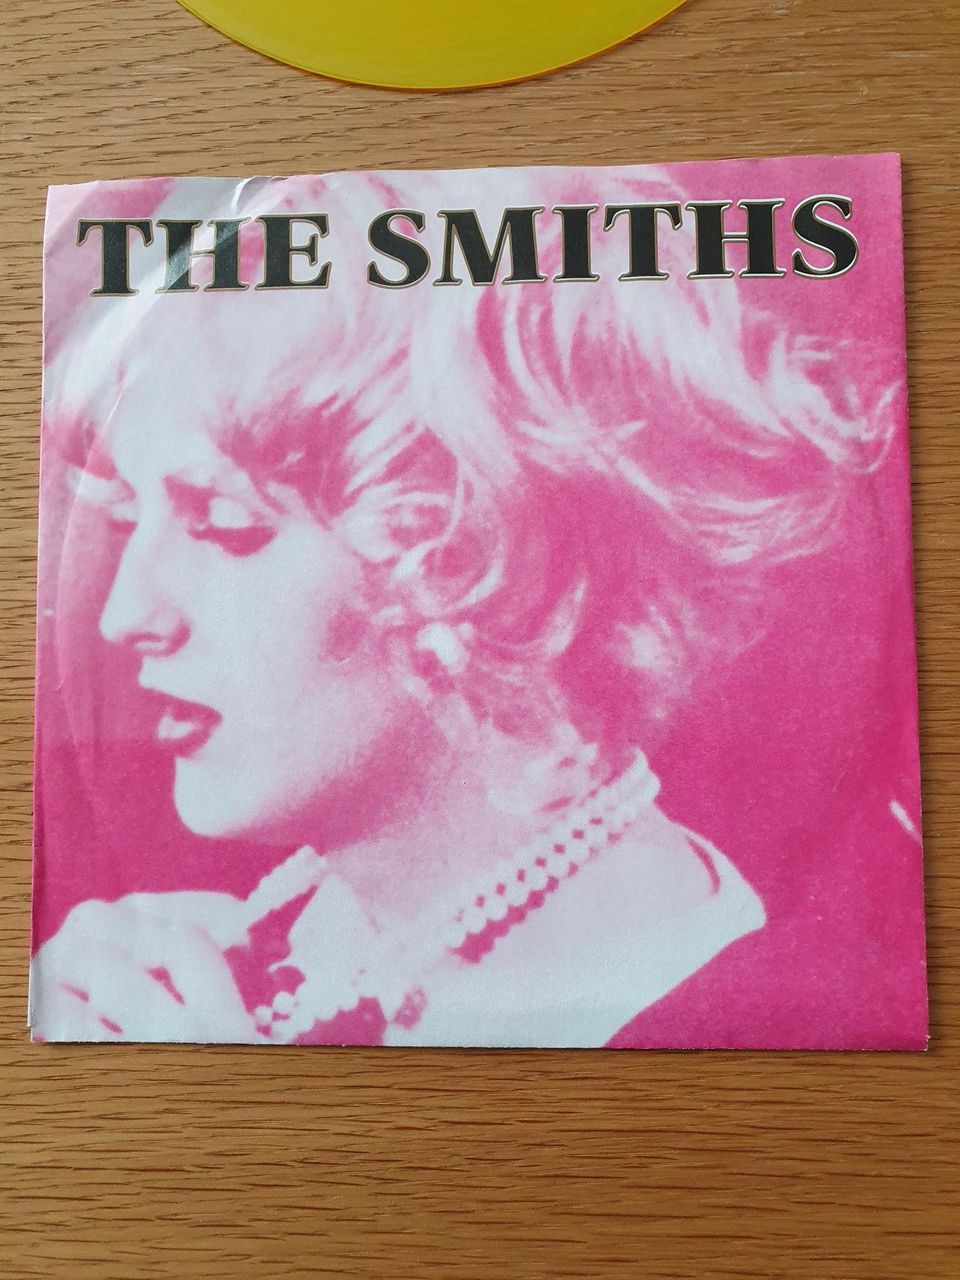 The Smiths, Sheila take a bow, 7"